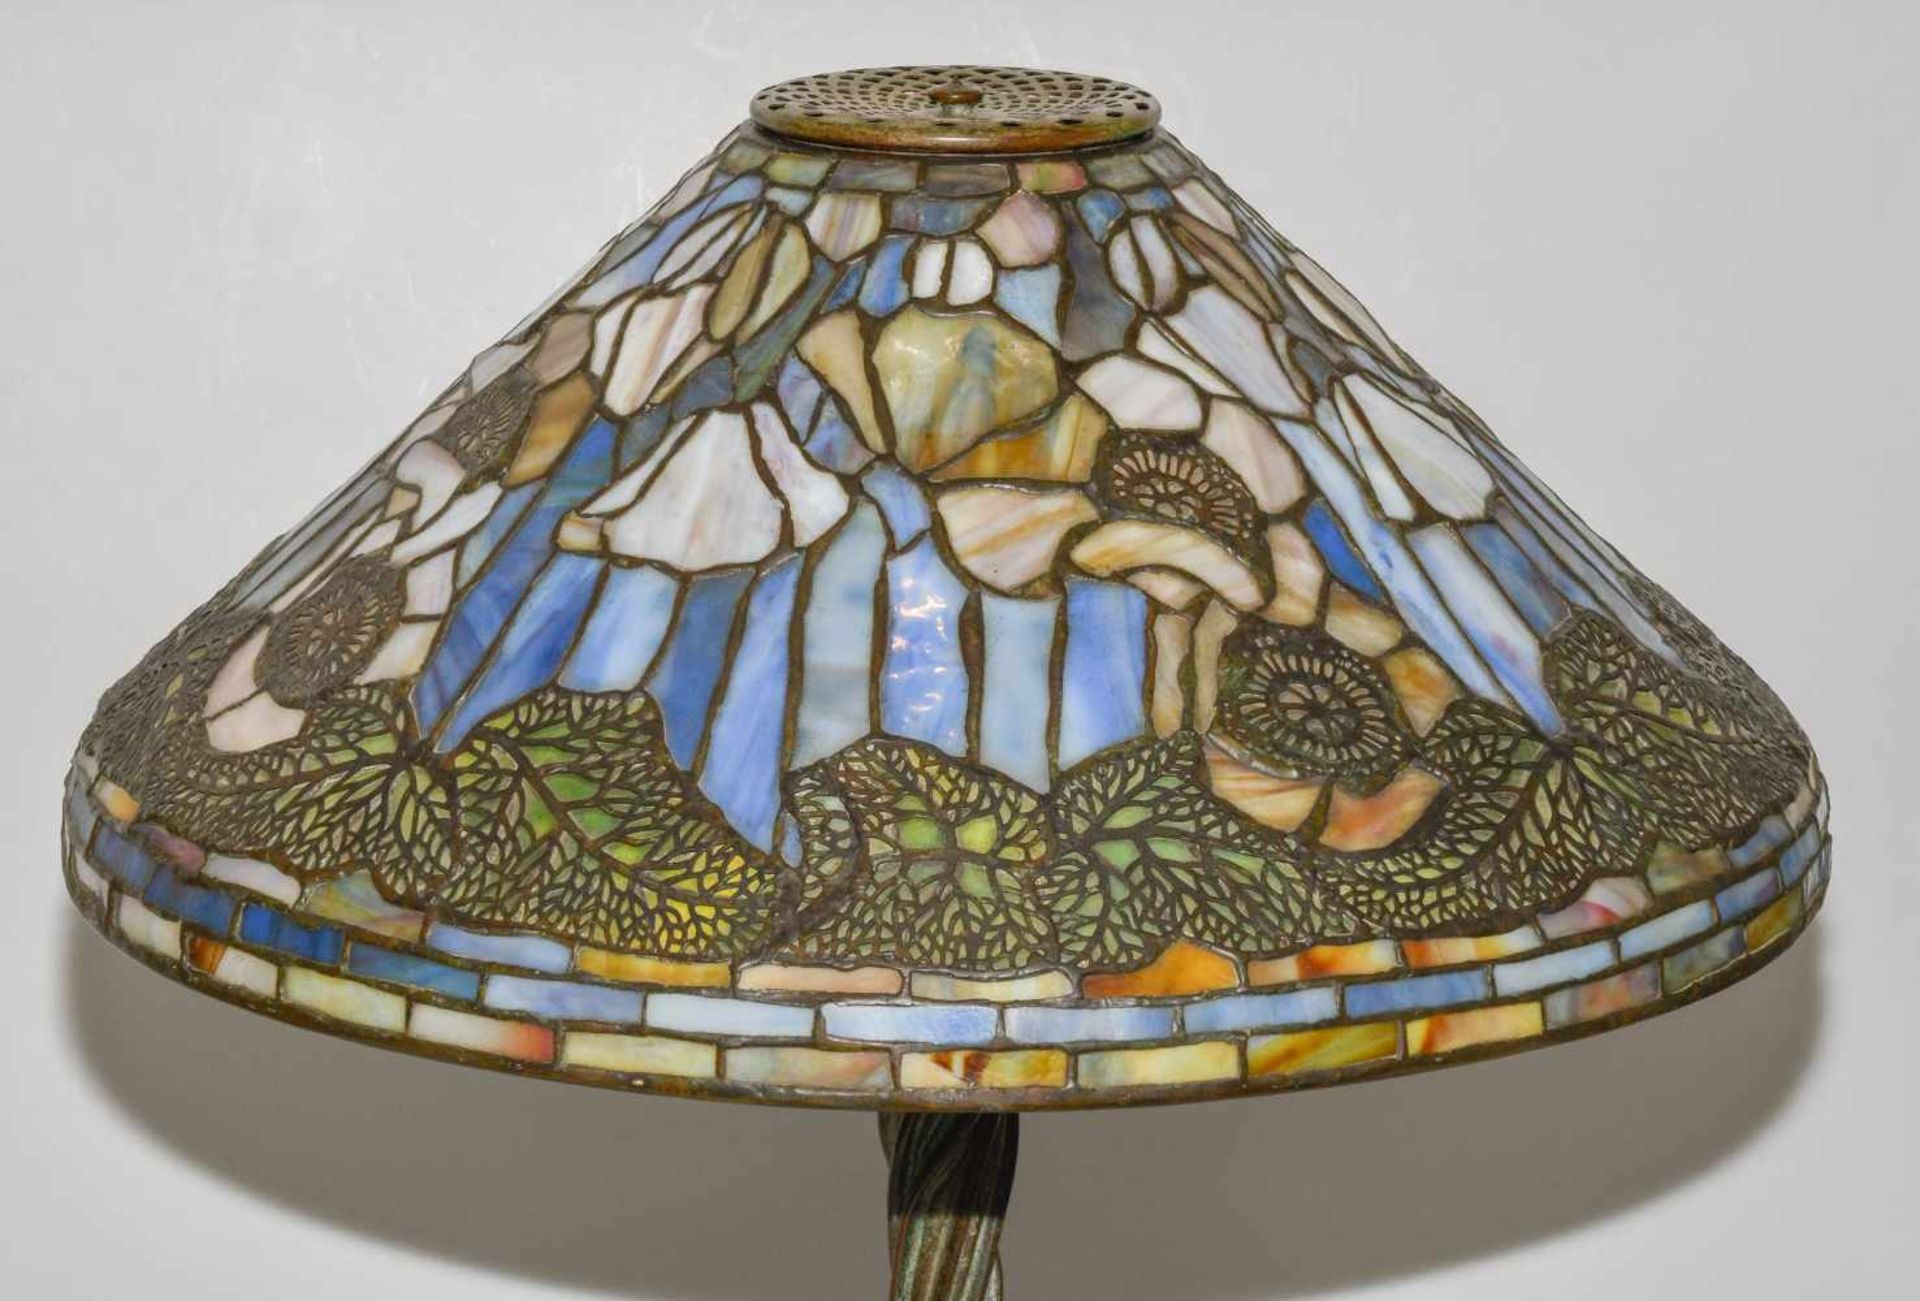 Tiffany Studios New YorkTischlampe "Poppy". Schirm aus "leaded Glass", weisser Mohn mit Blättern, - Image 22 of 24